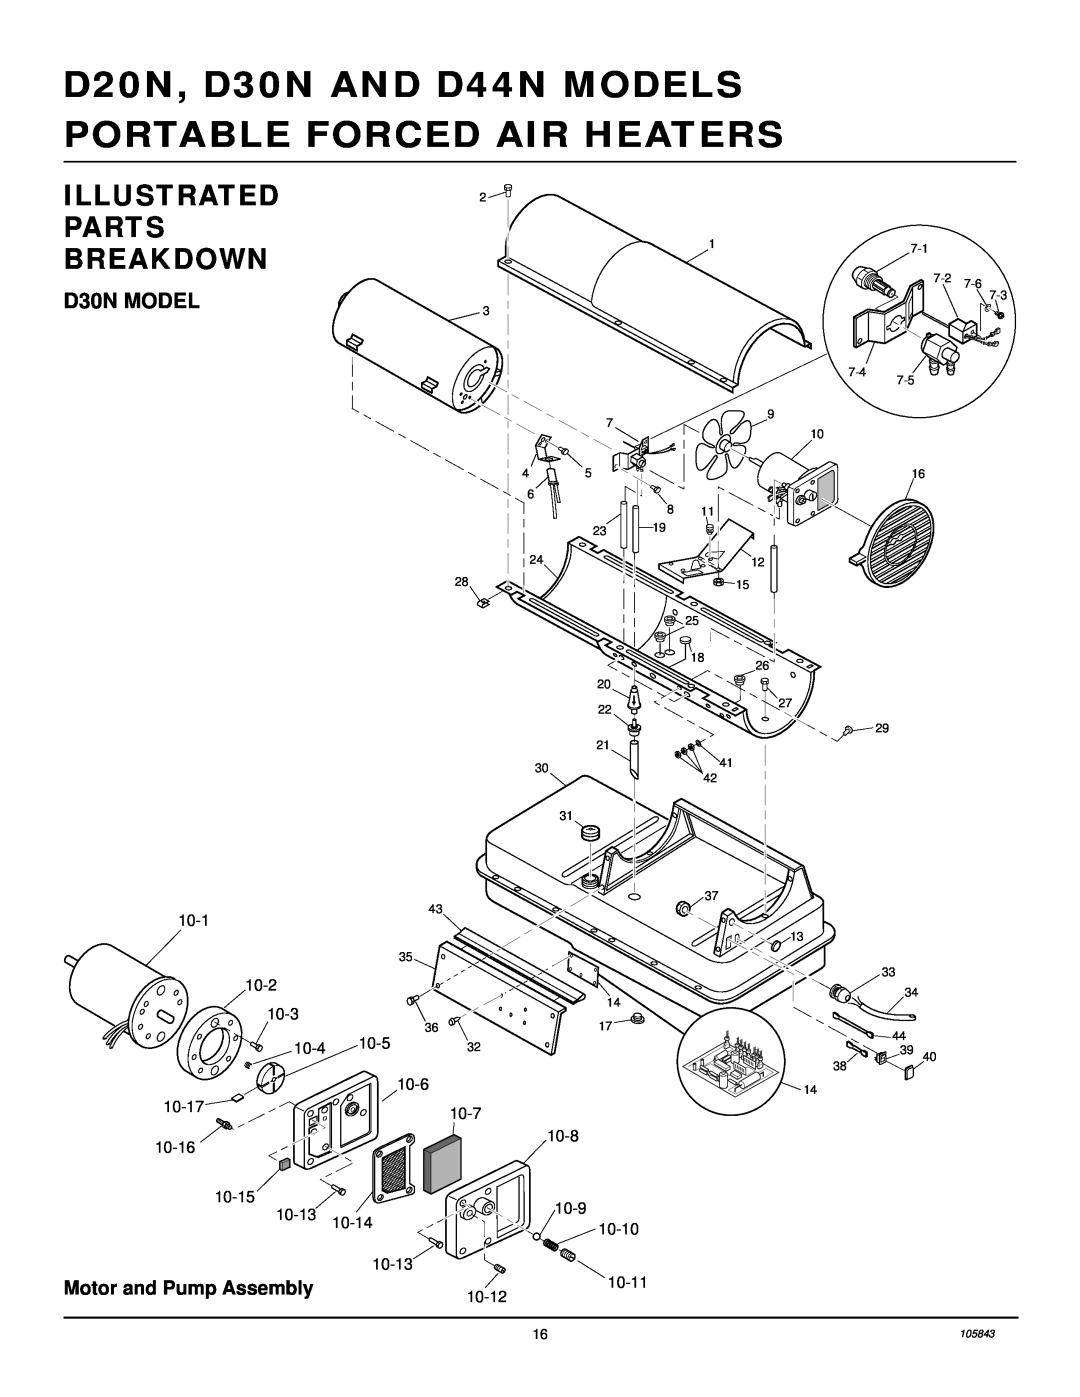 Desa D44N, D20N owner manual D30N MODEL, Illustrated Parts Breakdown 